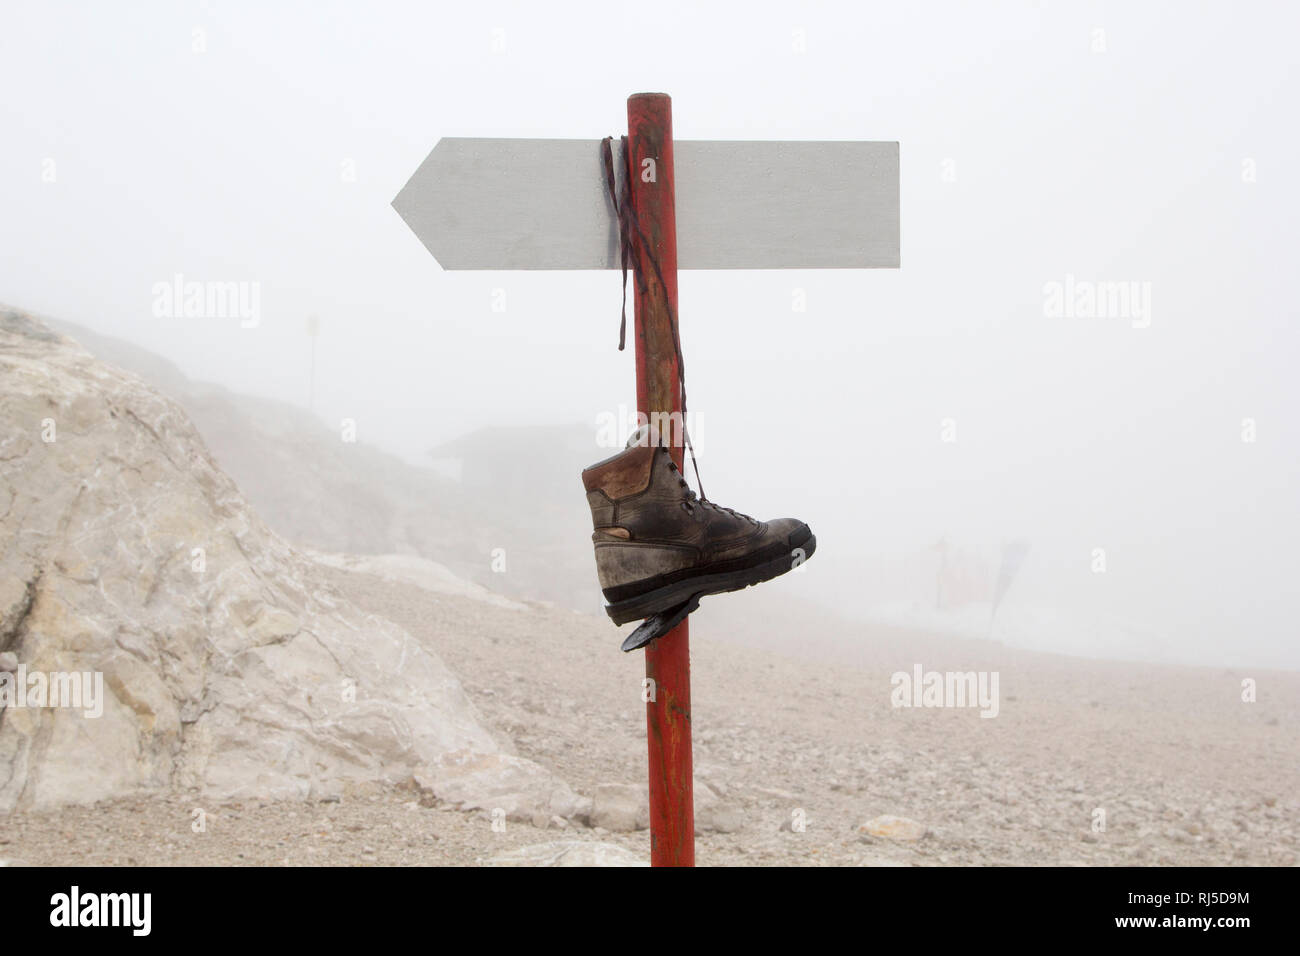 Ein kaputter Bergschuh hängt auf einem Berg an einem Wegweiser im Nebel Stock Photo